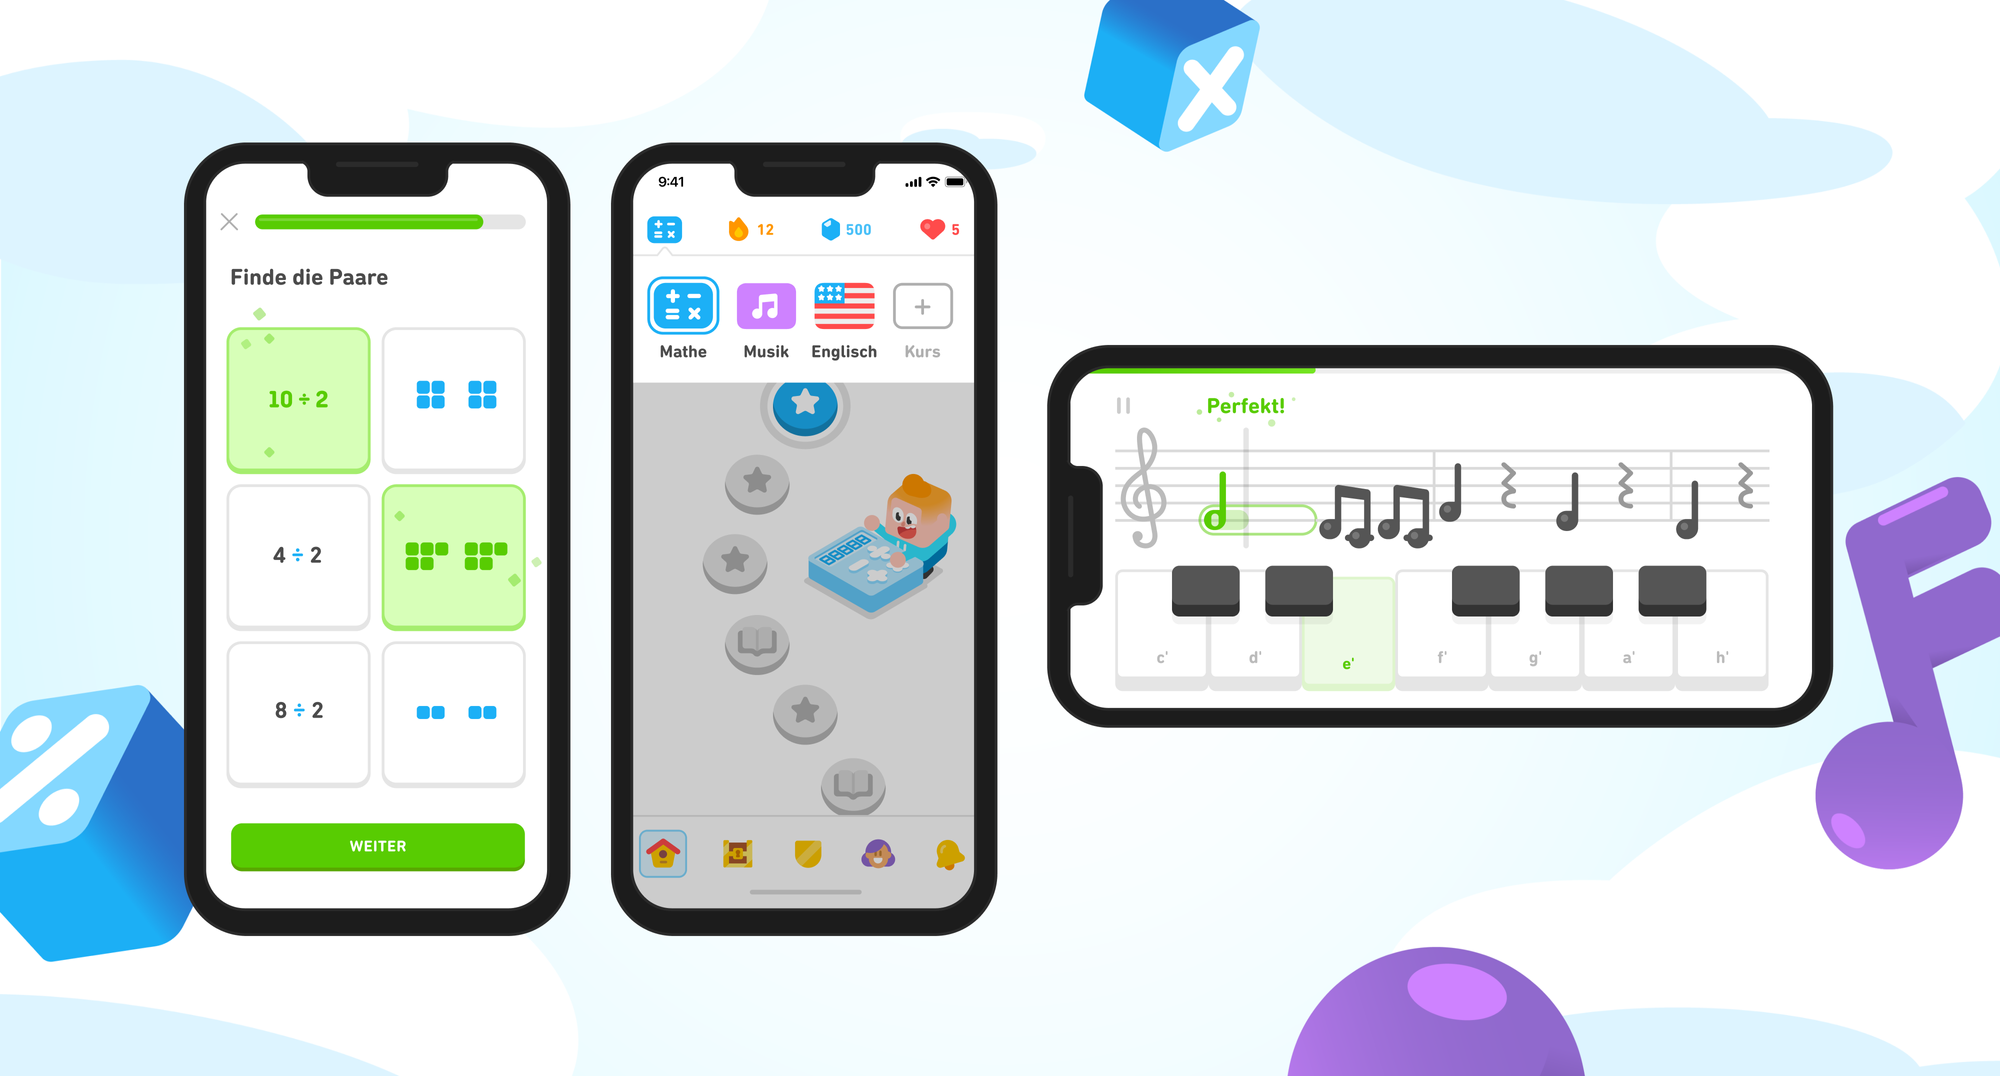 Drei iPhone-Bildschirme zeigen verschiedene Elemente der neuen Duolingo-App. Auf dem ersten ist eine Mathe-Lektion dargestellt, in der ein Lernender einen Stundenlohn ausrechnet. Der zweite zeigt die Kursauswahl mit je einem Mathe- und Musiksymbol neben der Flagge für den Französischkurs. Der dritte Bildschirm ist horizontal und beinhaltet unten eine Tastatur sowie darüber ein Notenliniensystem, das andeutet, dass der Lernende auf der Tastatur mitspielt, während sich die Noten auf dem Bildschirm bewegen.